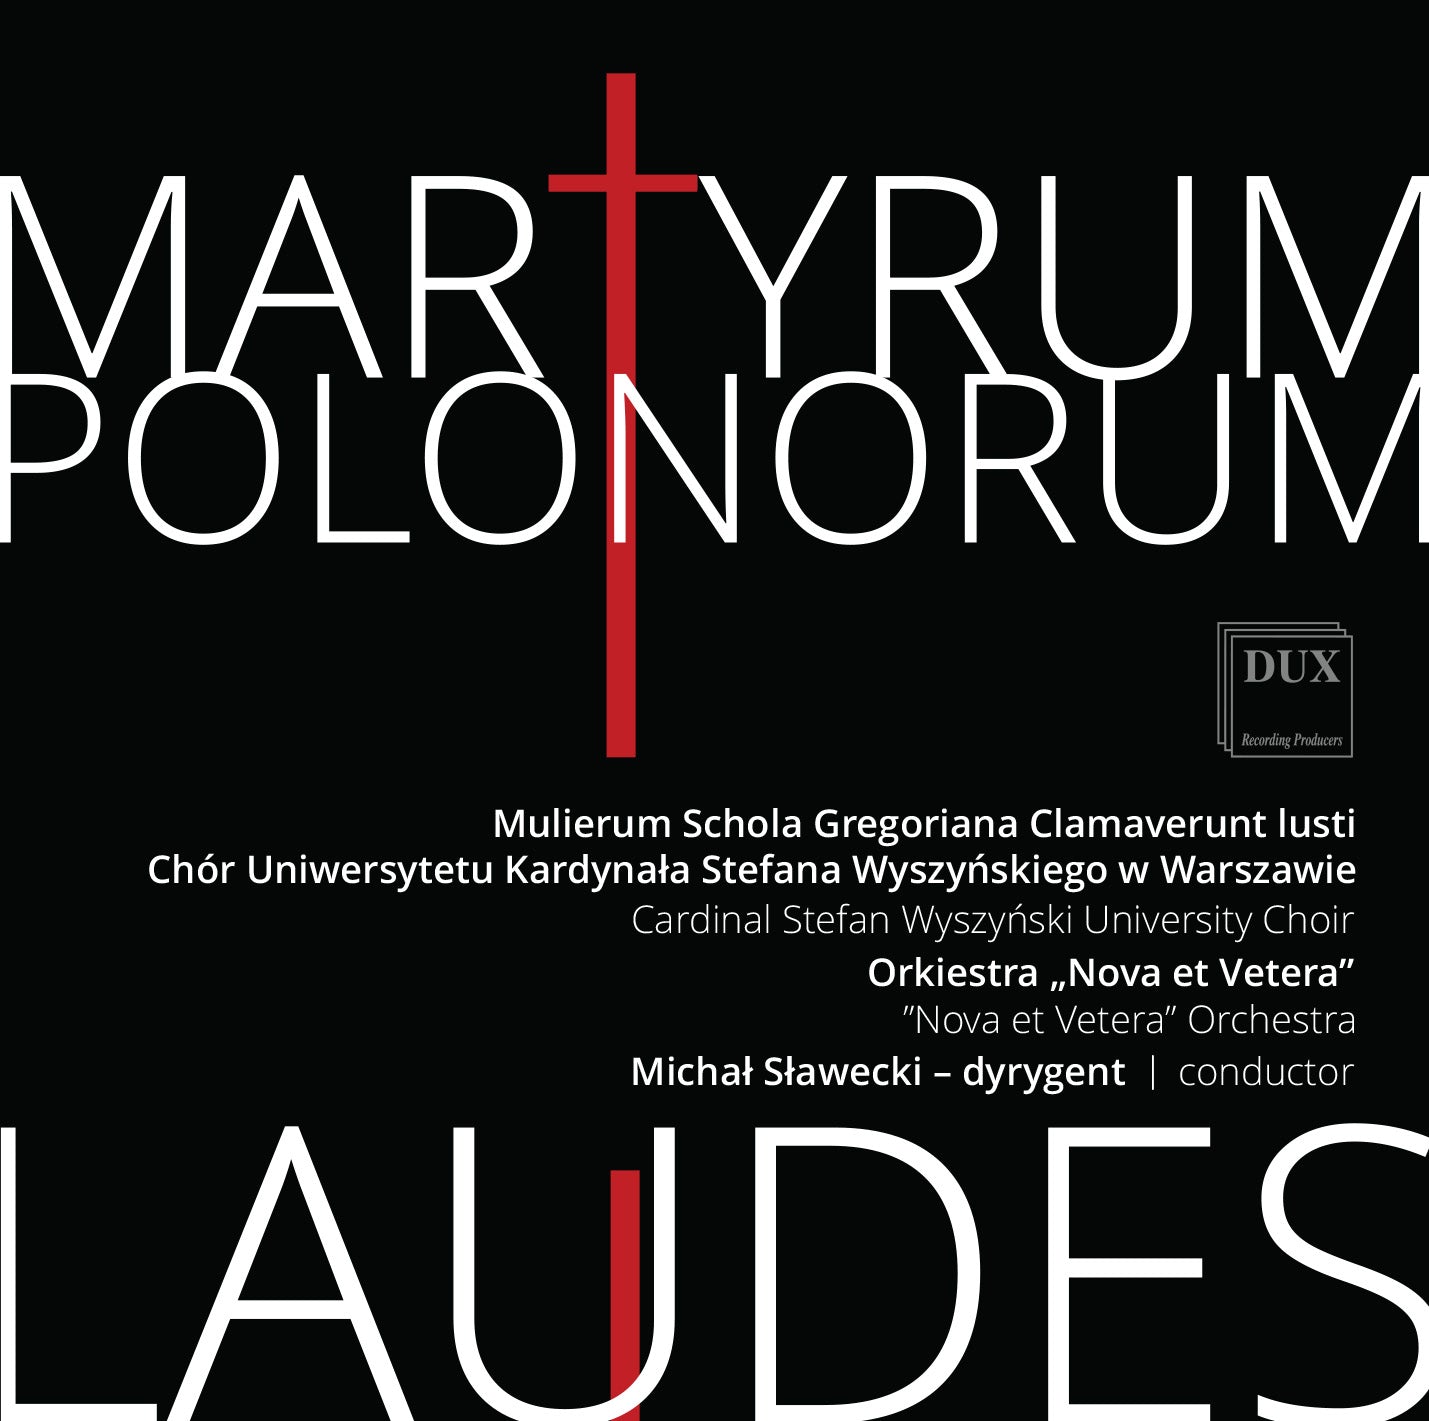 Martyrum Polonorum Laudes / Nova et Vetera Orchestra